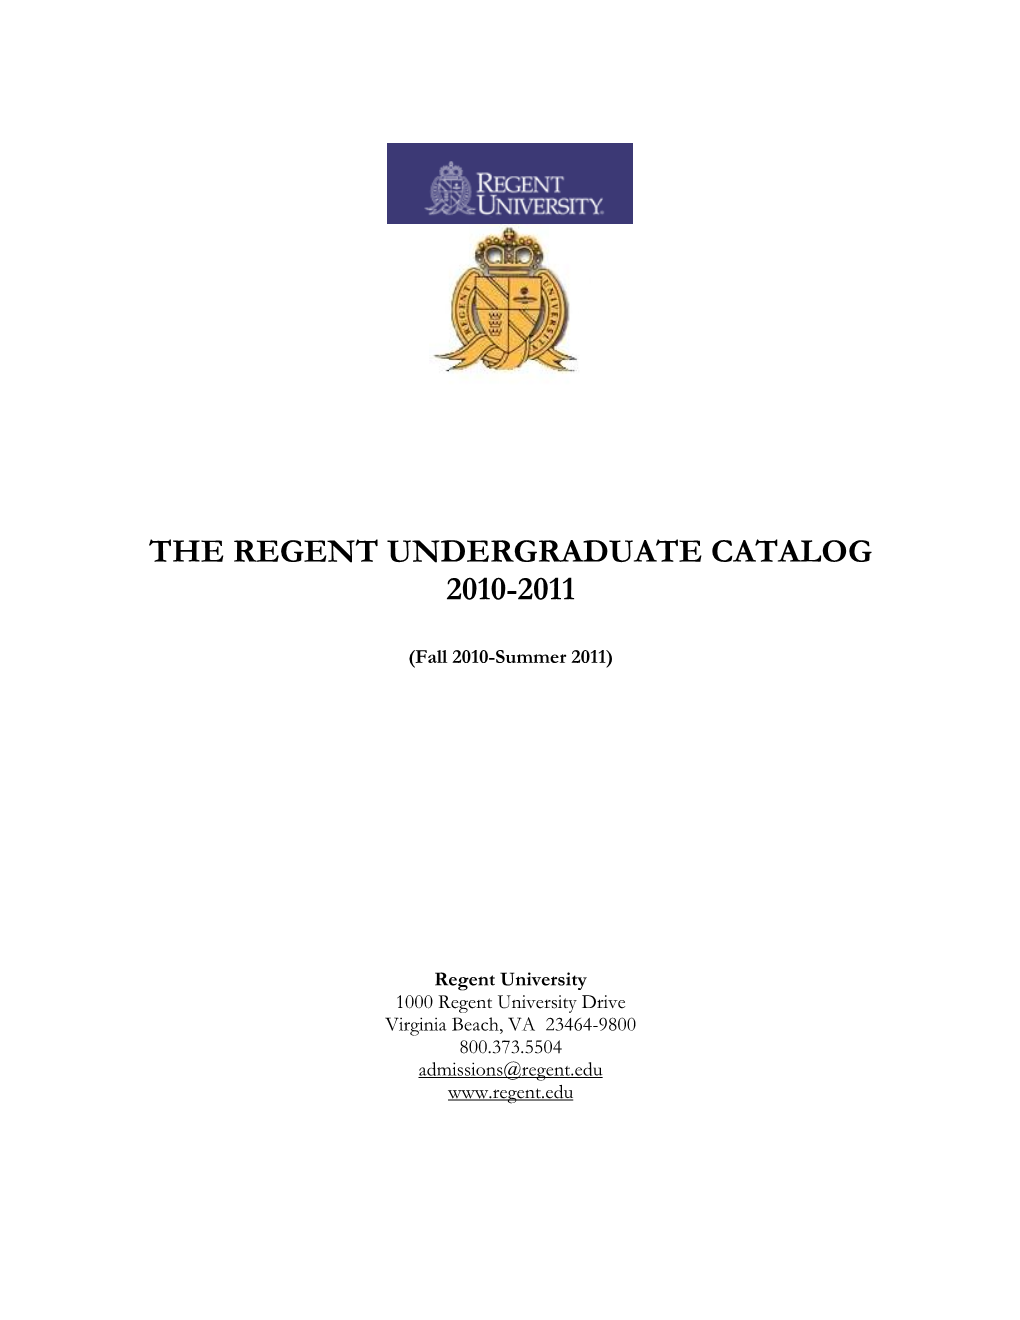 The Regent Undergraduate Catalog 2010-2011